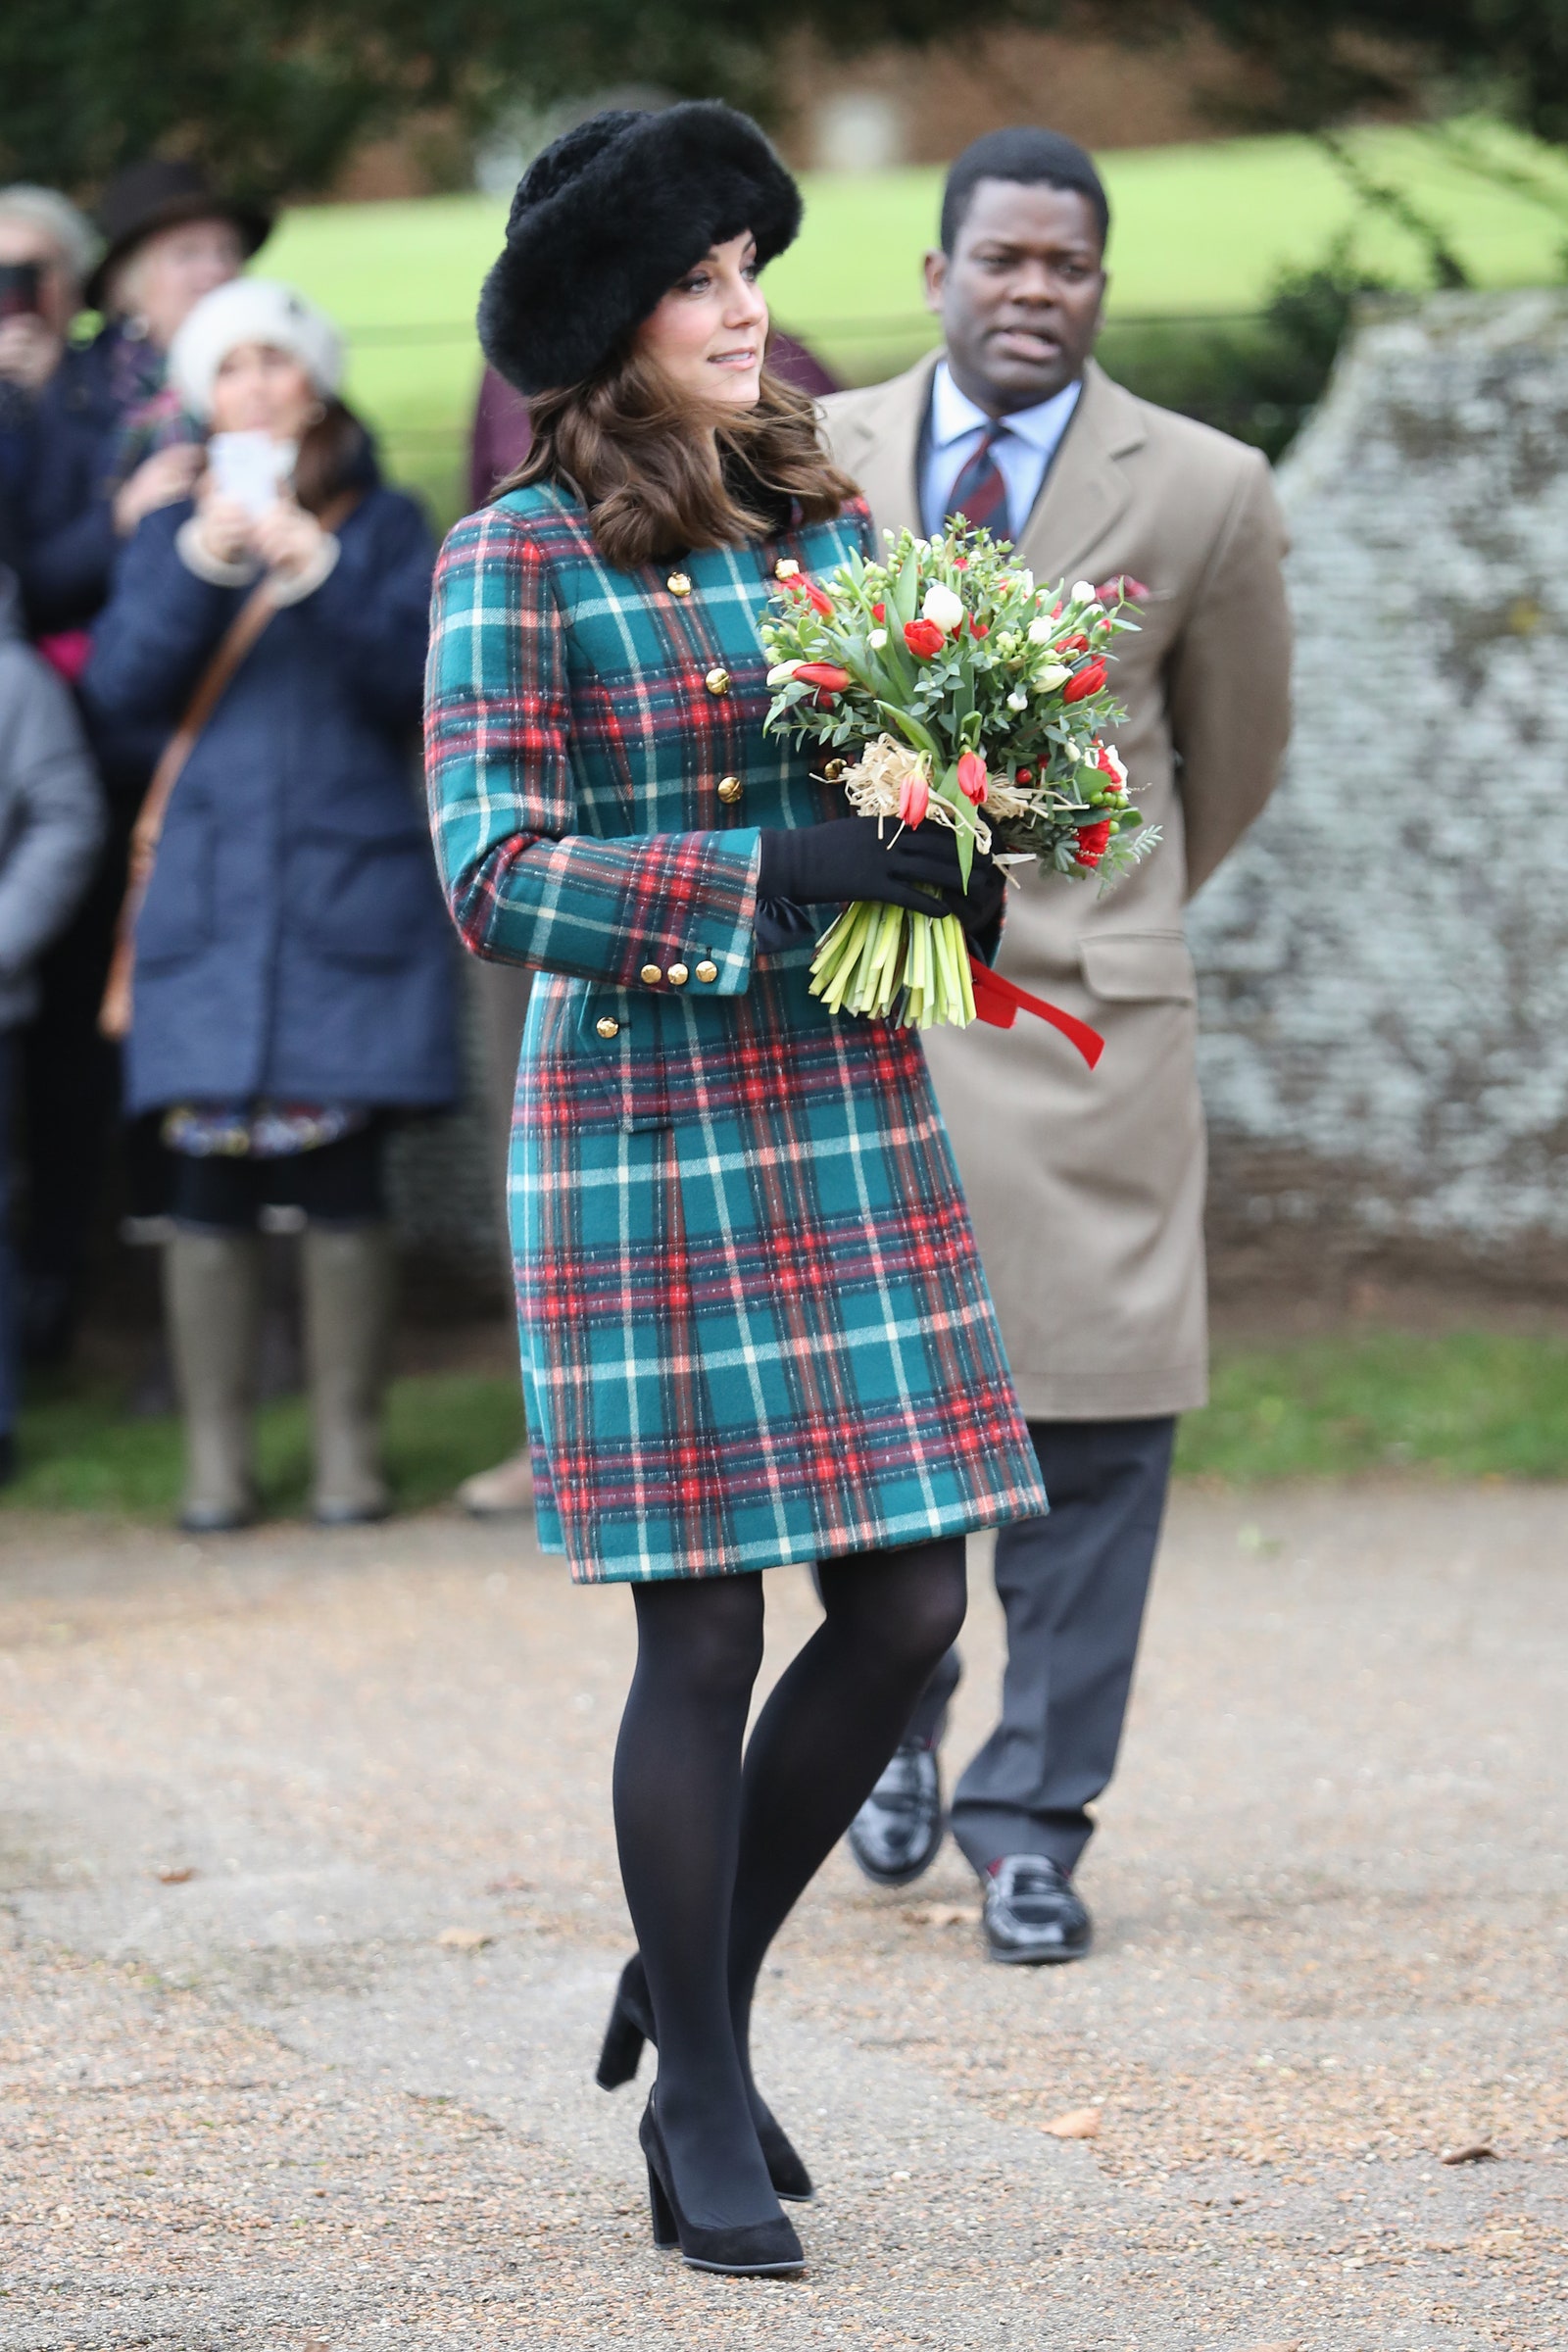 Kate Middleton diện chiếc mũ lông khổng lồ và áo khoác kẻ sọc cổ điển đến tham dự buổi lễ nhà thờ vào dịp Giáng sinh vào tháng 12 năm 2017.